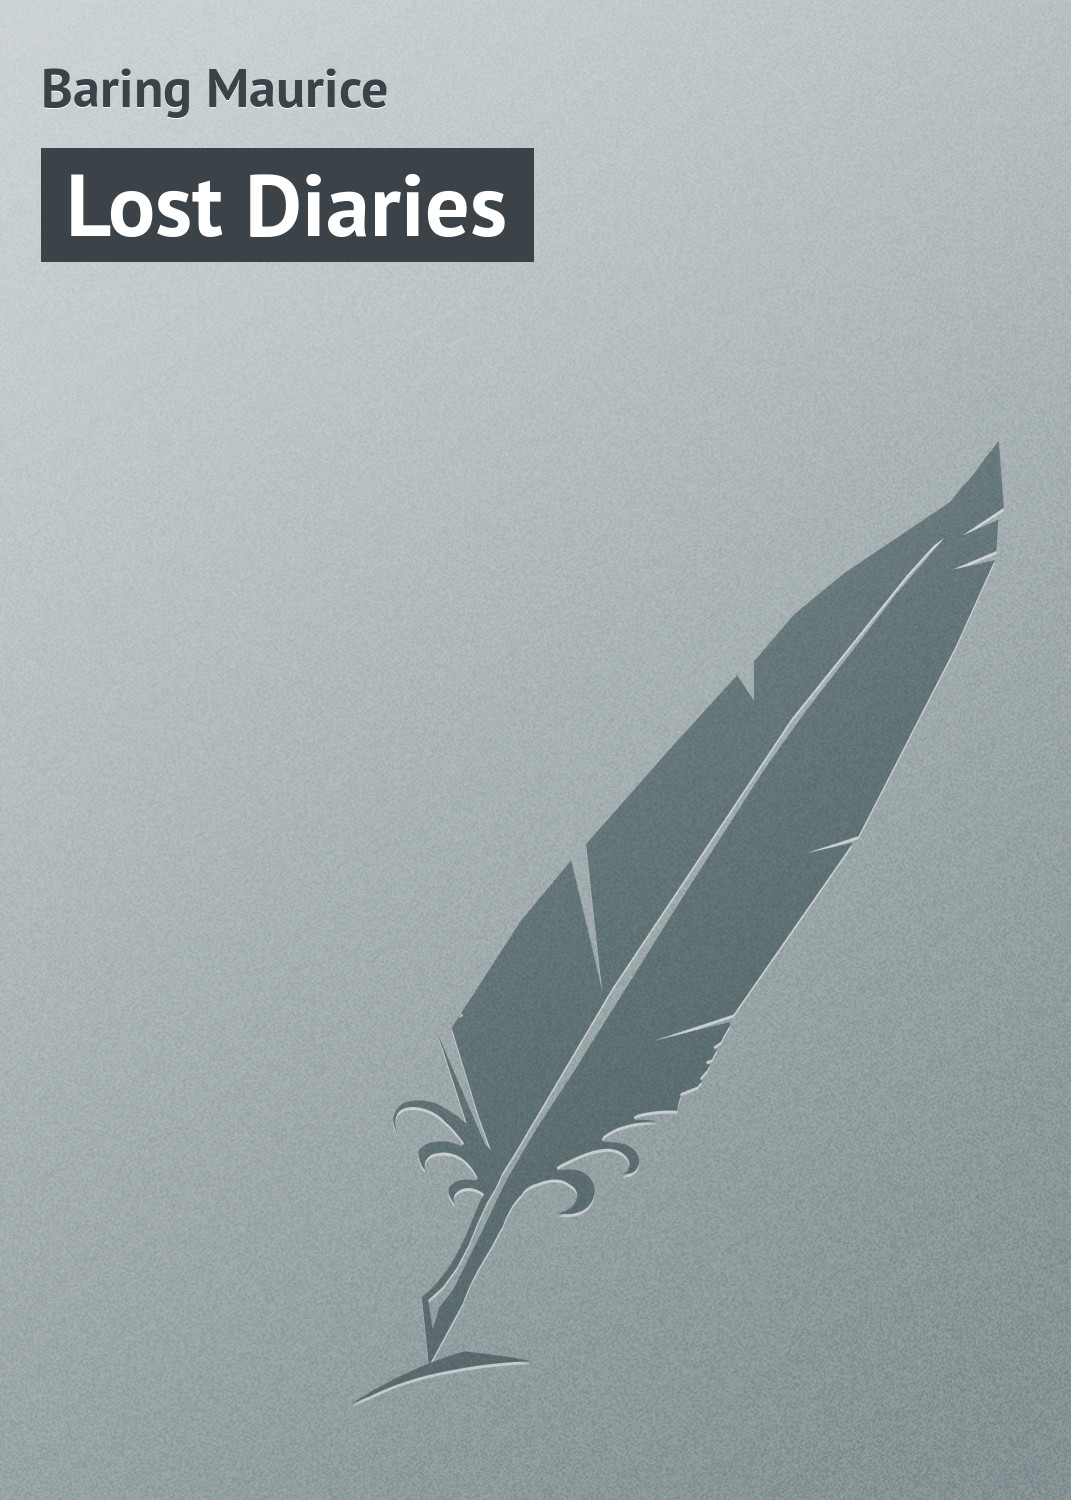 Книга Lost Diaries из серии , созданная Maurice Baring, может относится к жанру Зарубежная классика, Зарубежный юмор, Иностранные языки. Стоимость электронной книги Lost Diaries с идентификатором 23160507 составляет 5.99 руб.